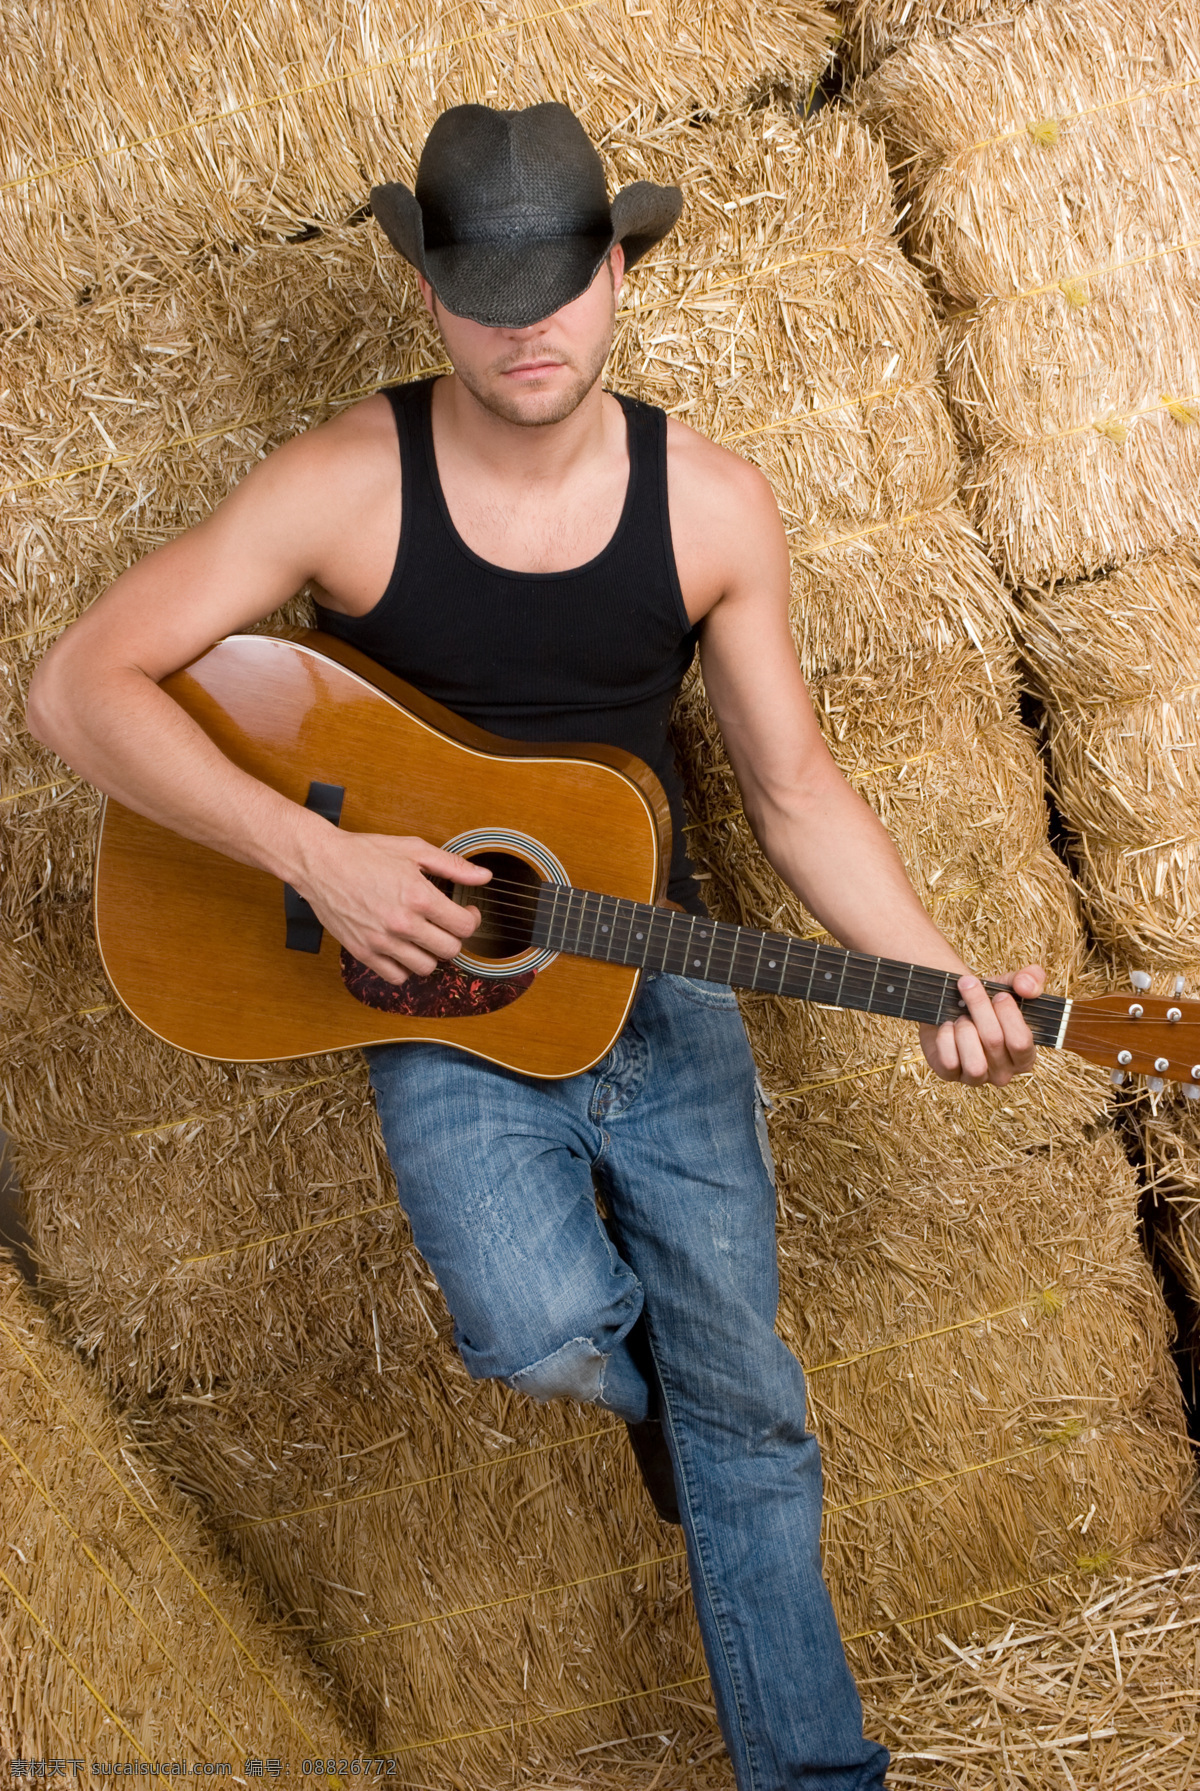 弹 吉他 牛仔 弹吉他的牛仔 音乐 乐器 弹奏 欧美男性 外国男人 生活人物 人物图片